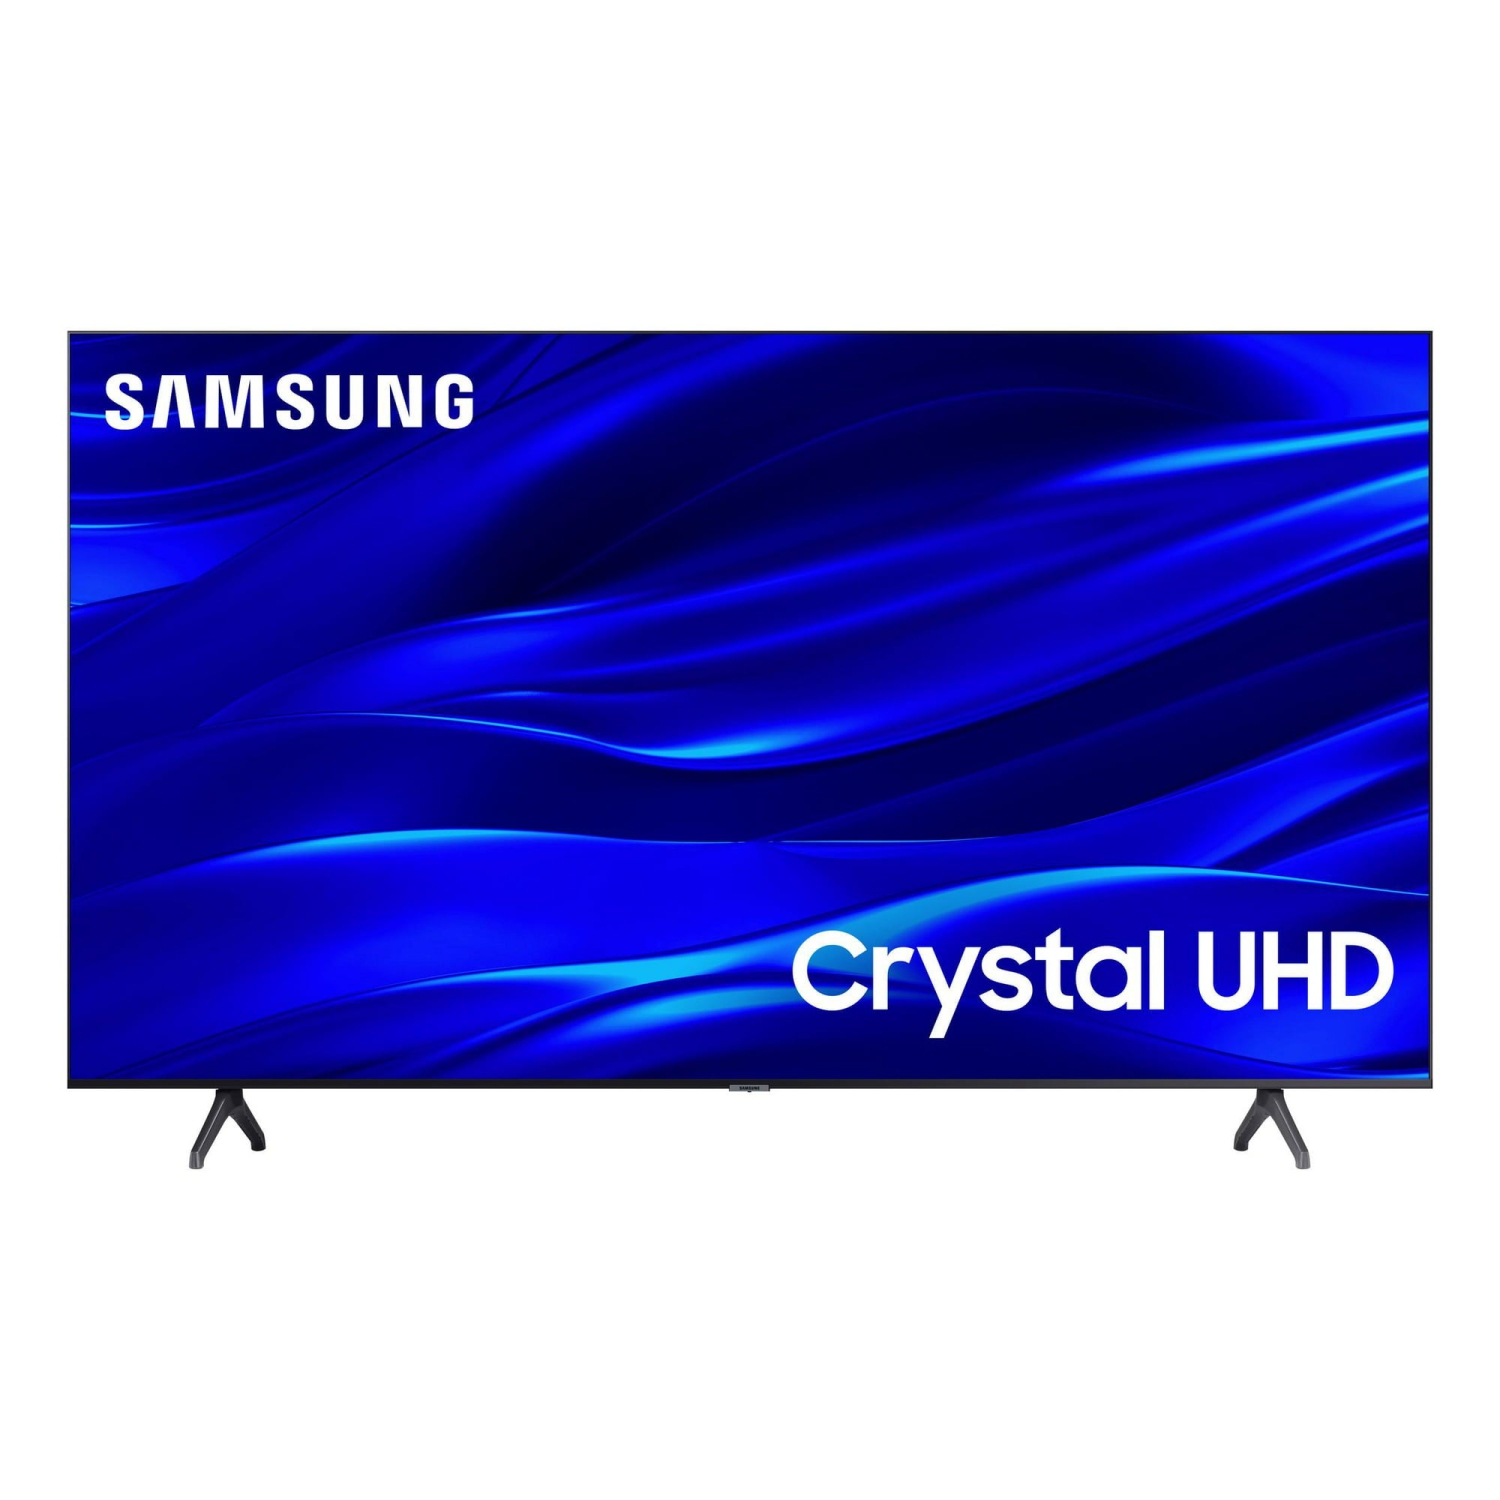 REFURBISHED(Good) - SAMSUNG 70" Class TU690T-Series Crystal Ultra HD 4K Smart TV (UN70TU690T)